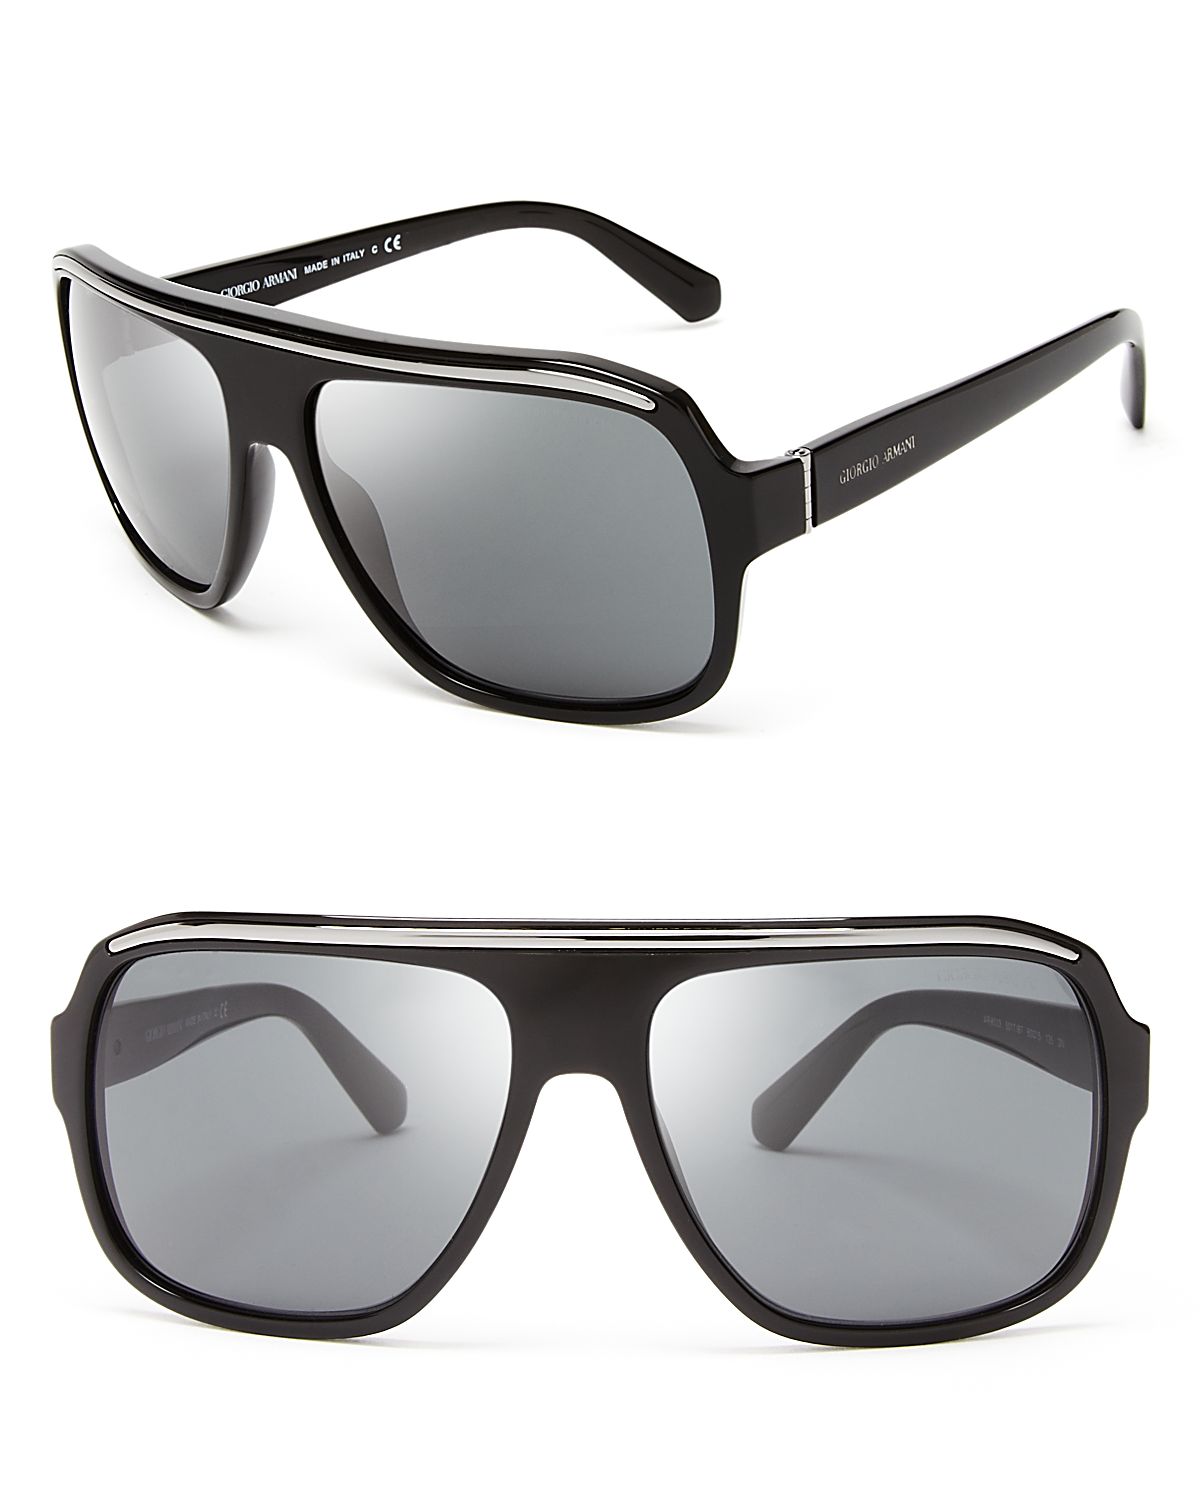 Lyst - Giorgio Armani Timeless Oversized Square Sunglasses in Black